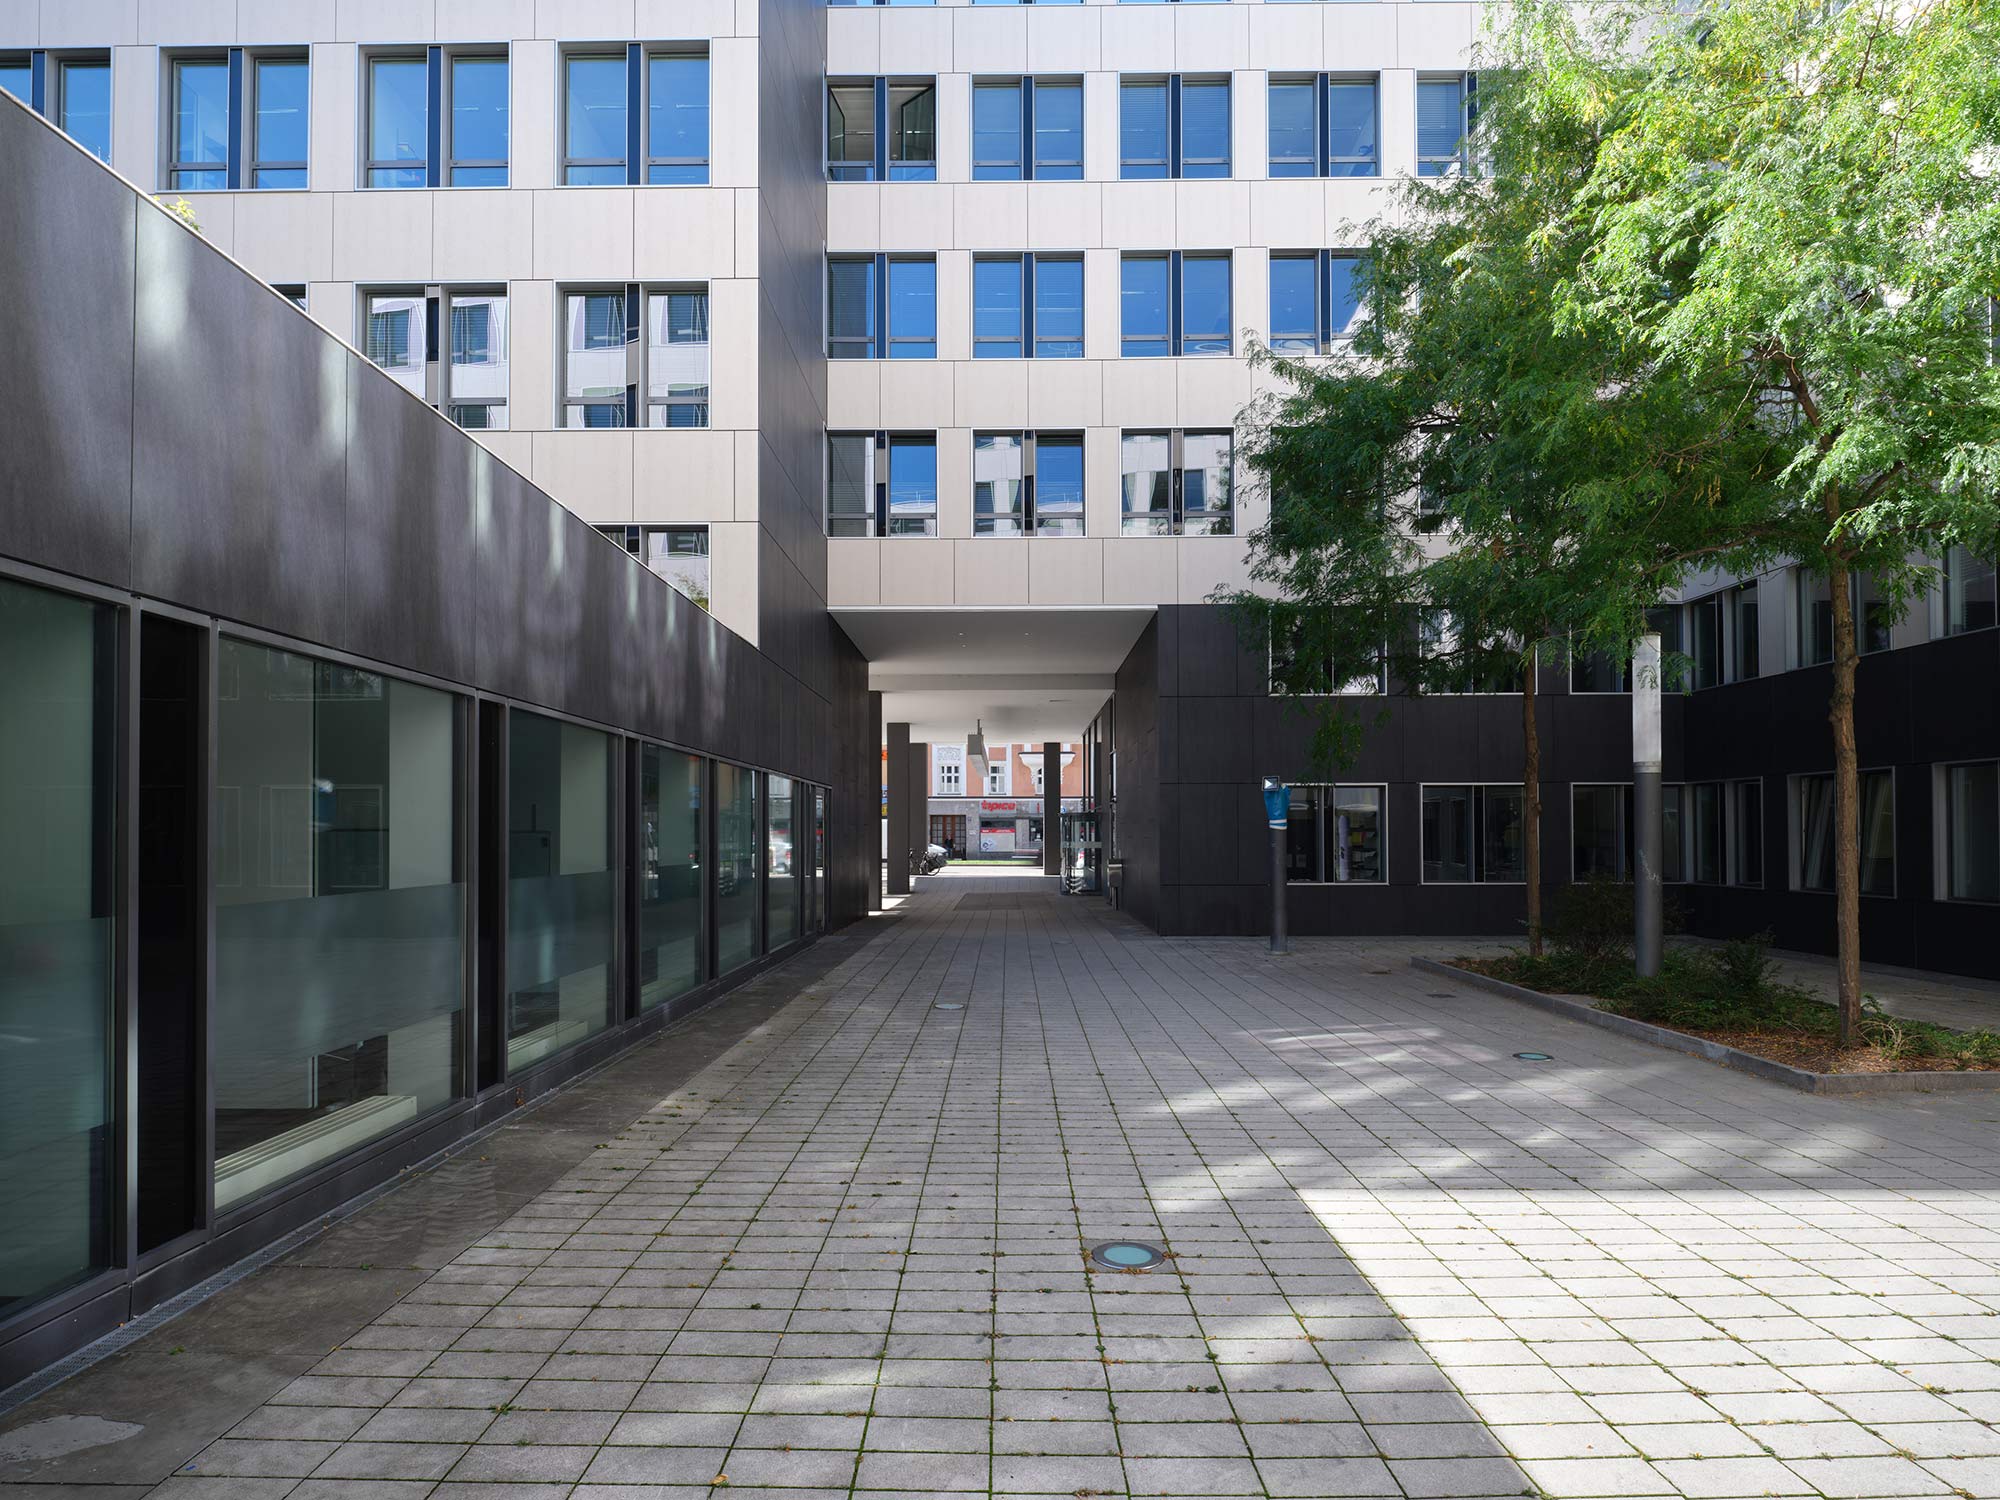 Image of Fachada office building Munich in A complex Dekton facade for The Warner Building in Michigan - Cosentino